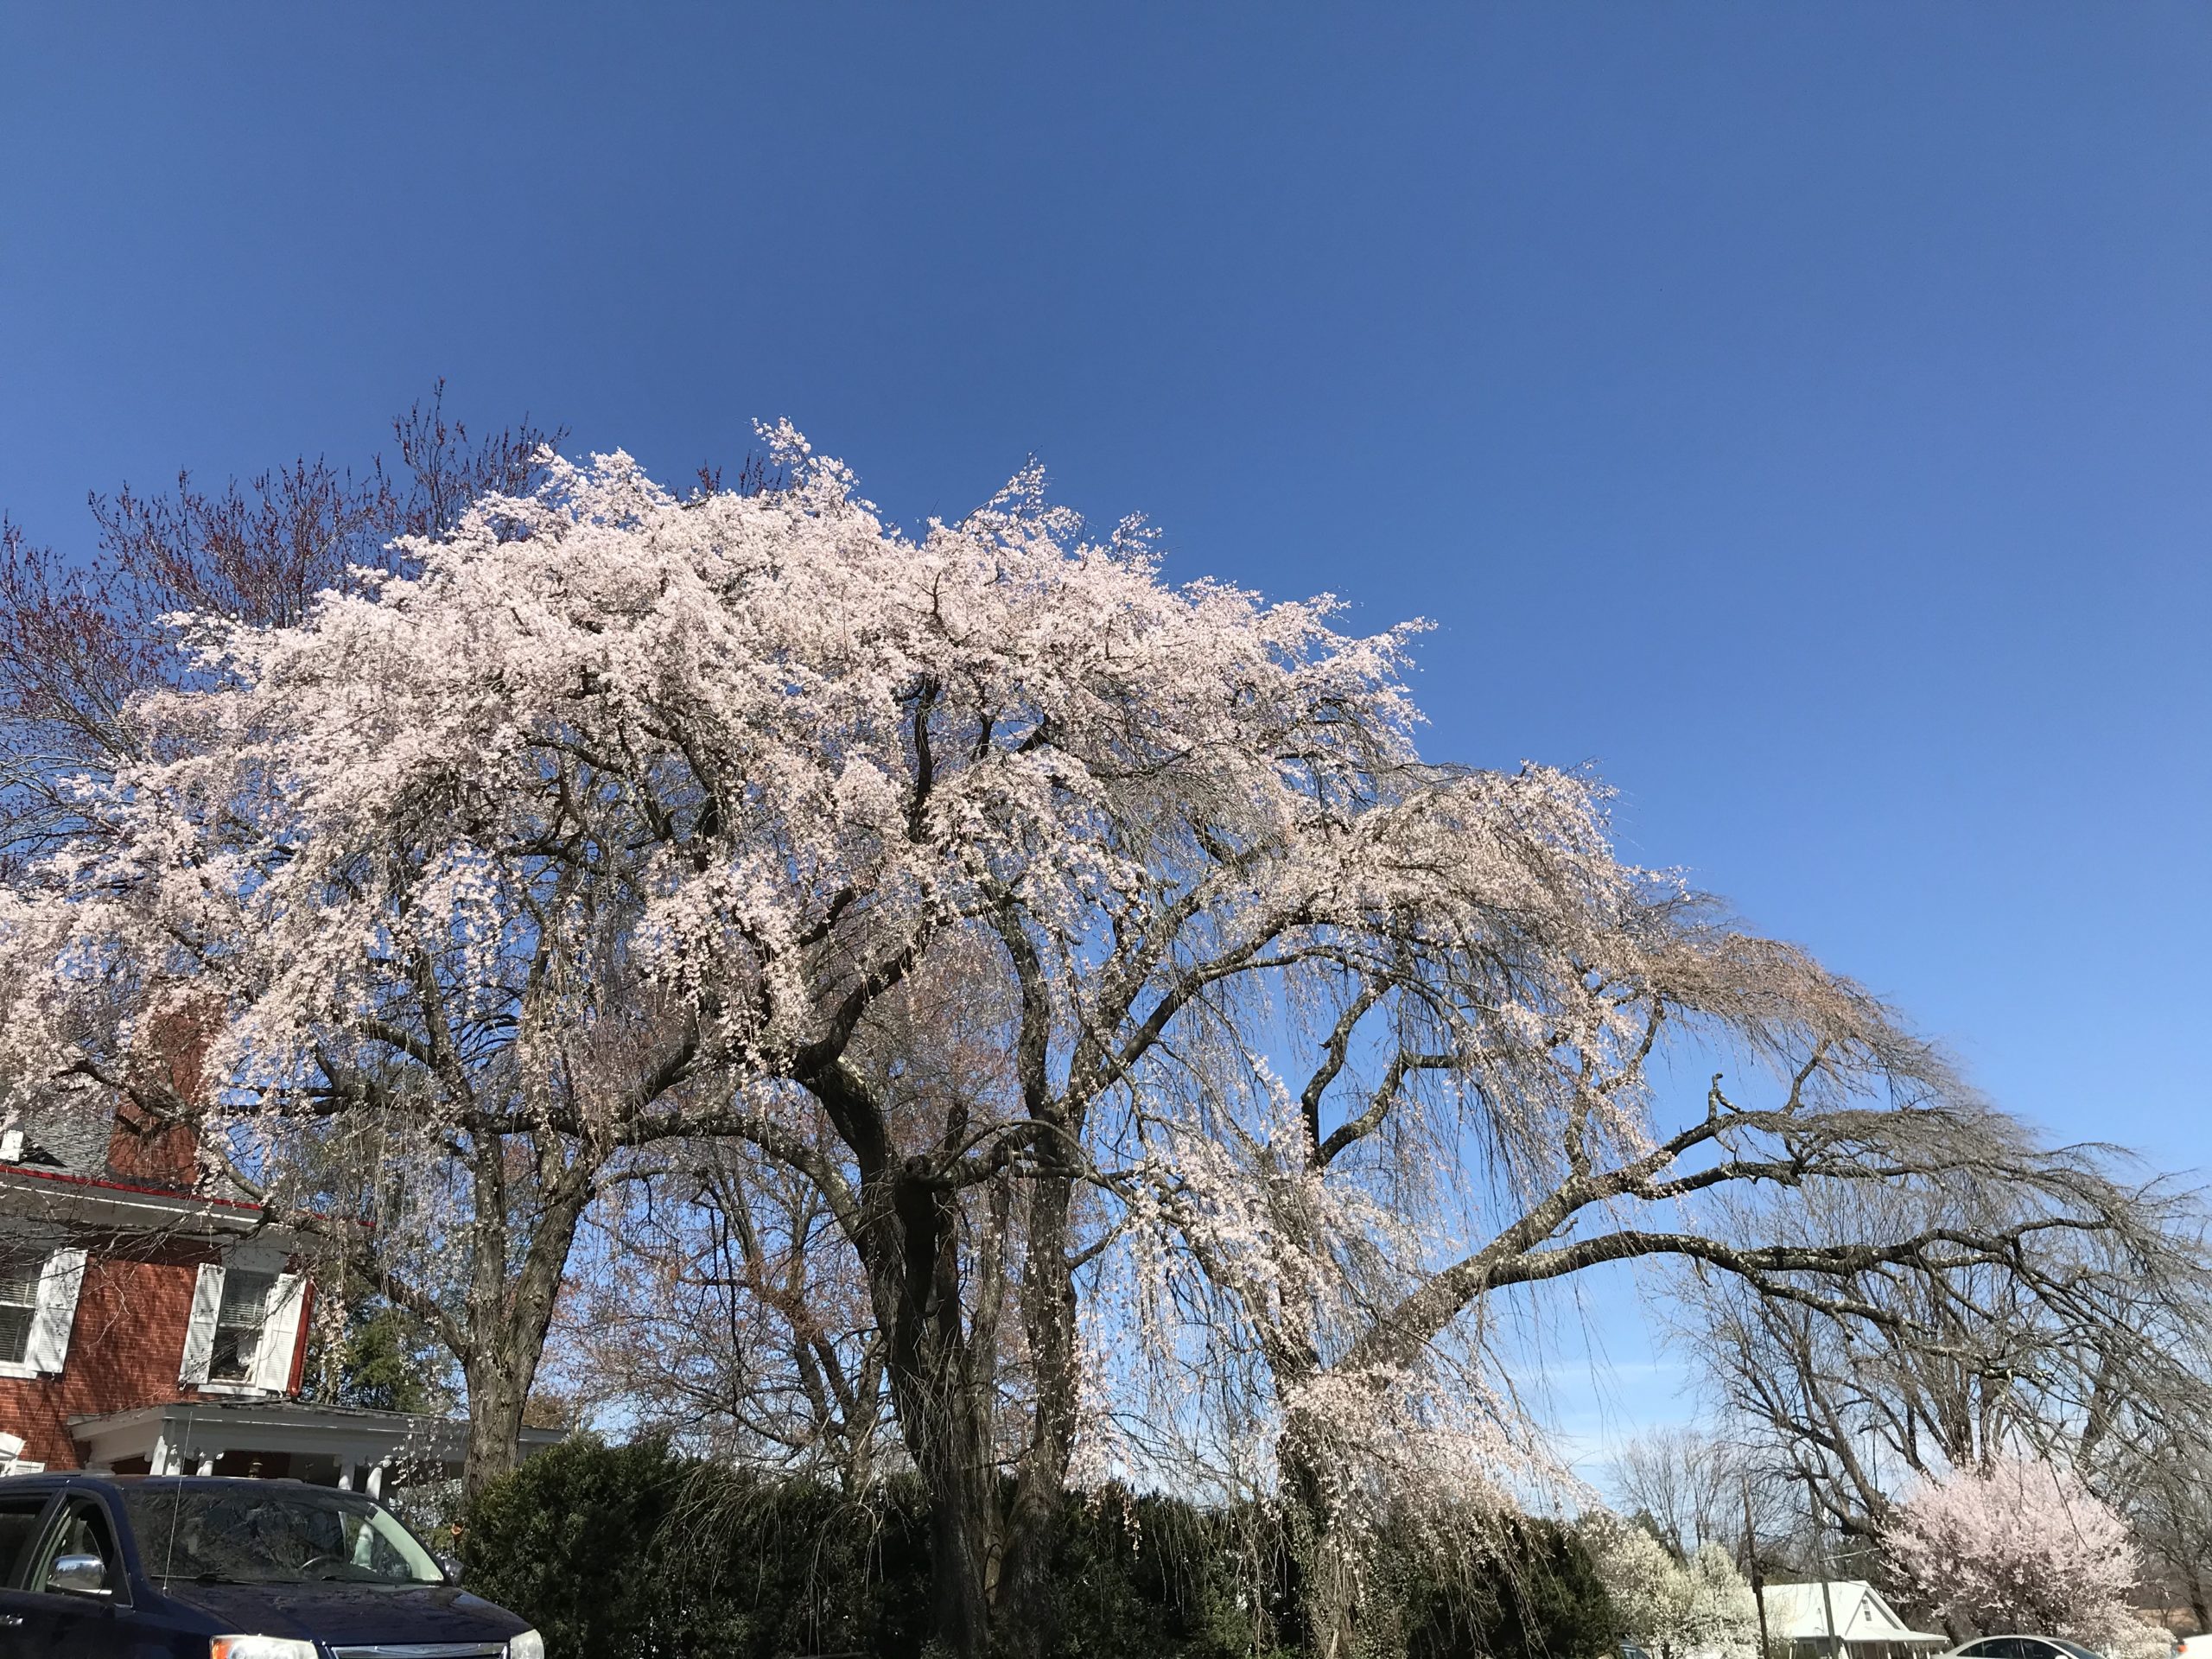 Weeping Cherry tree in bloom